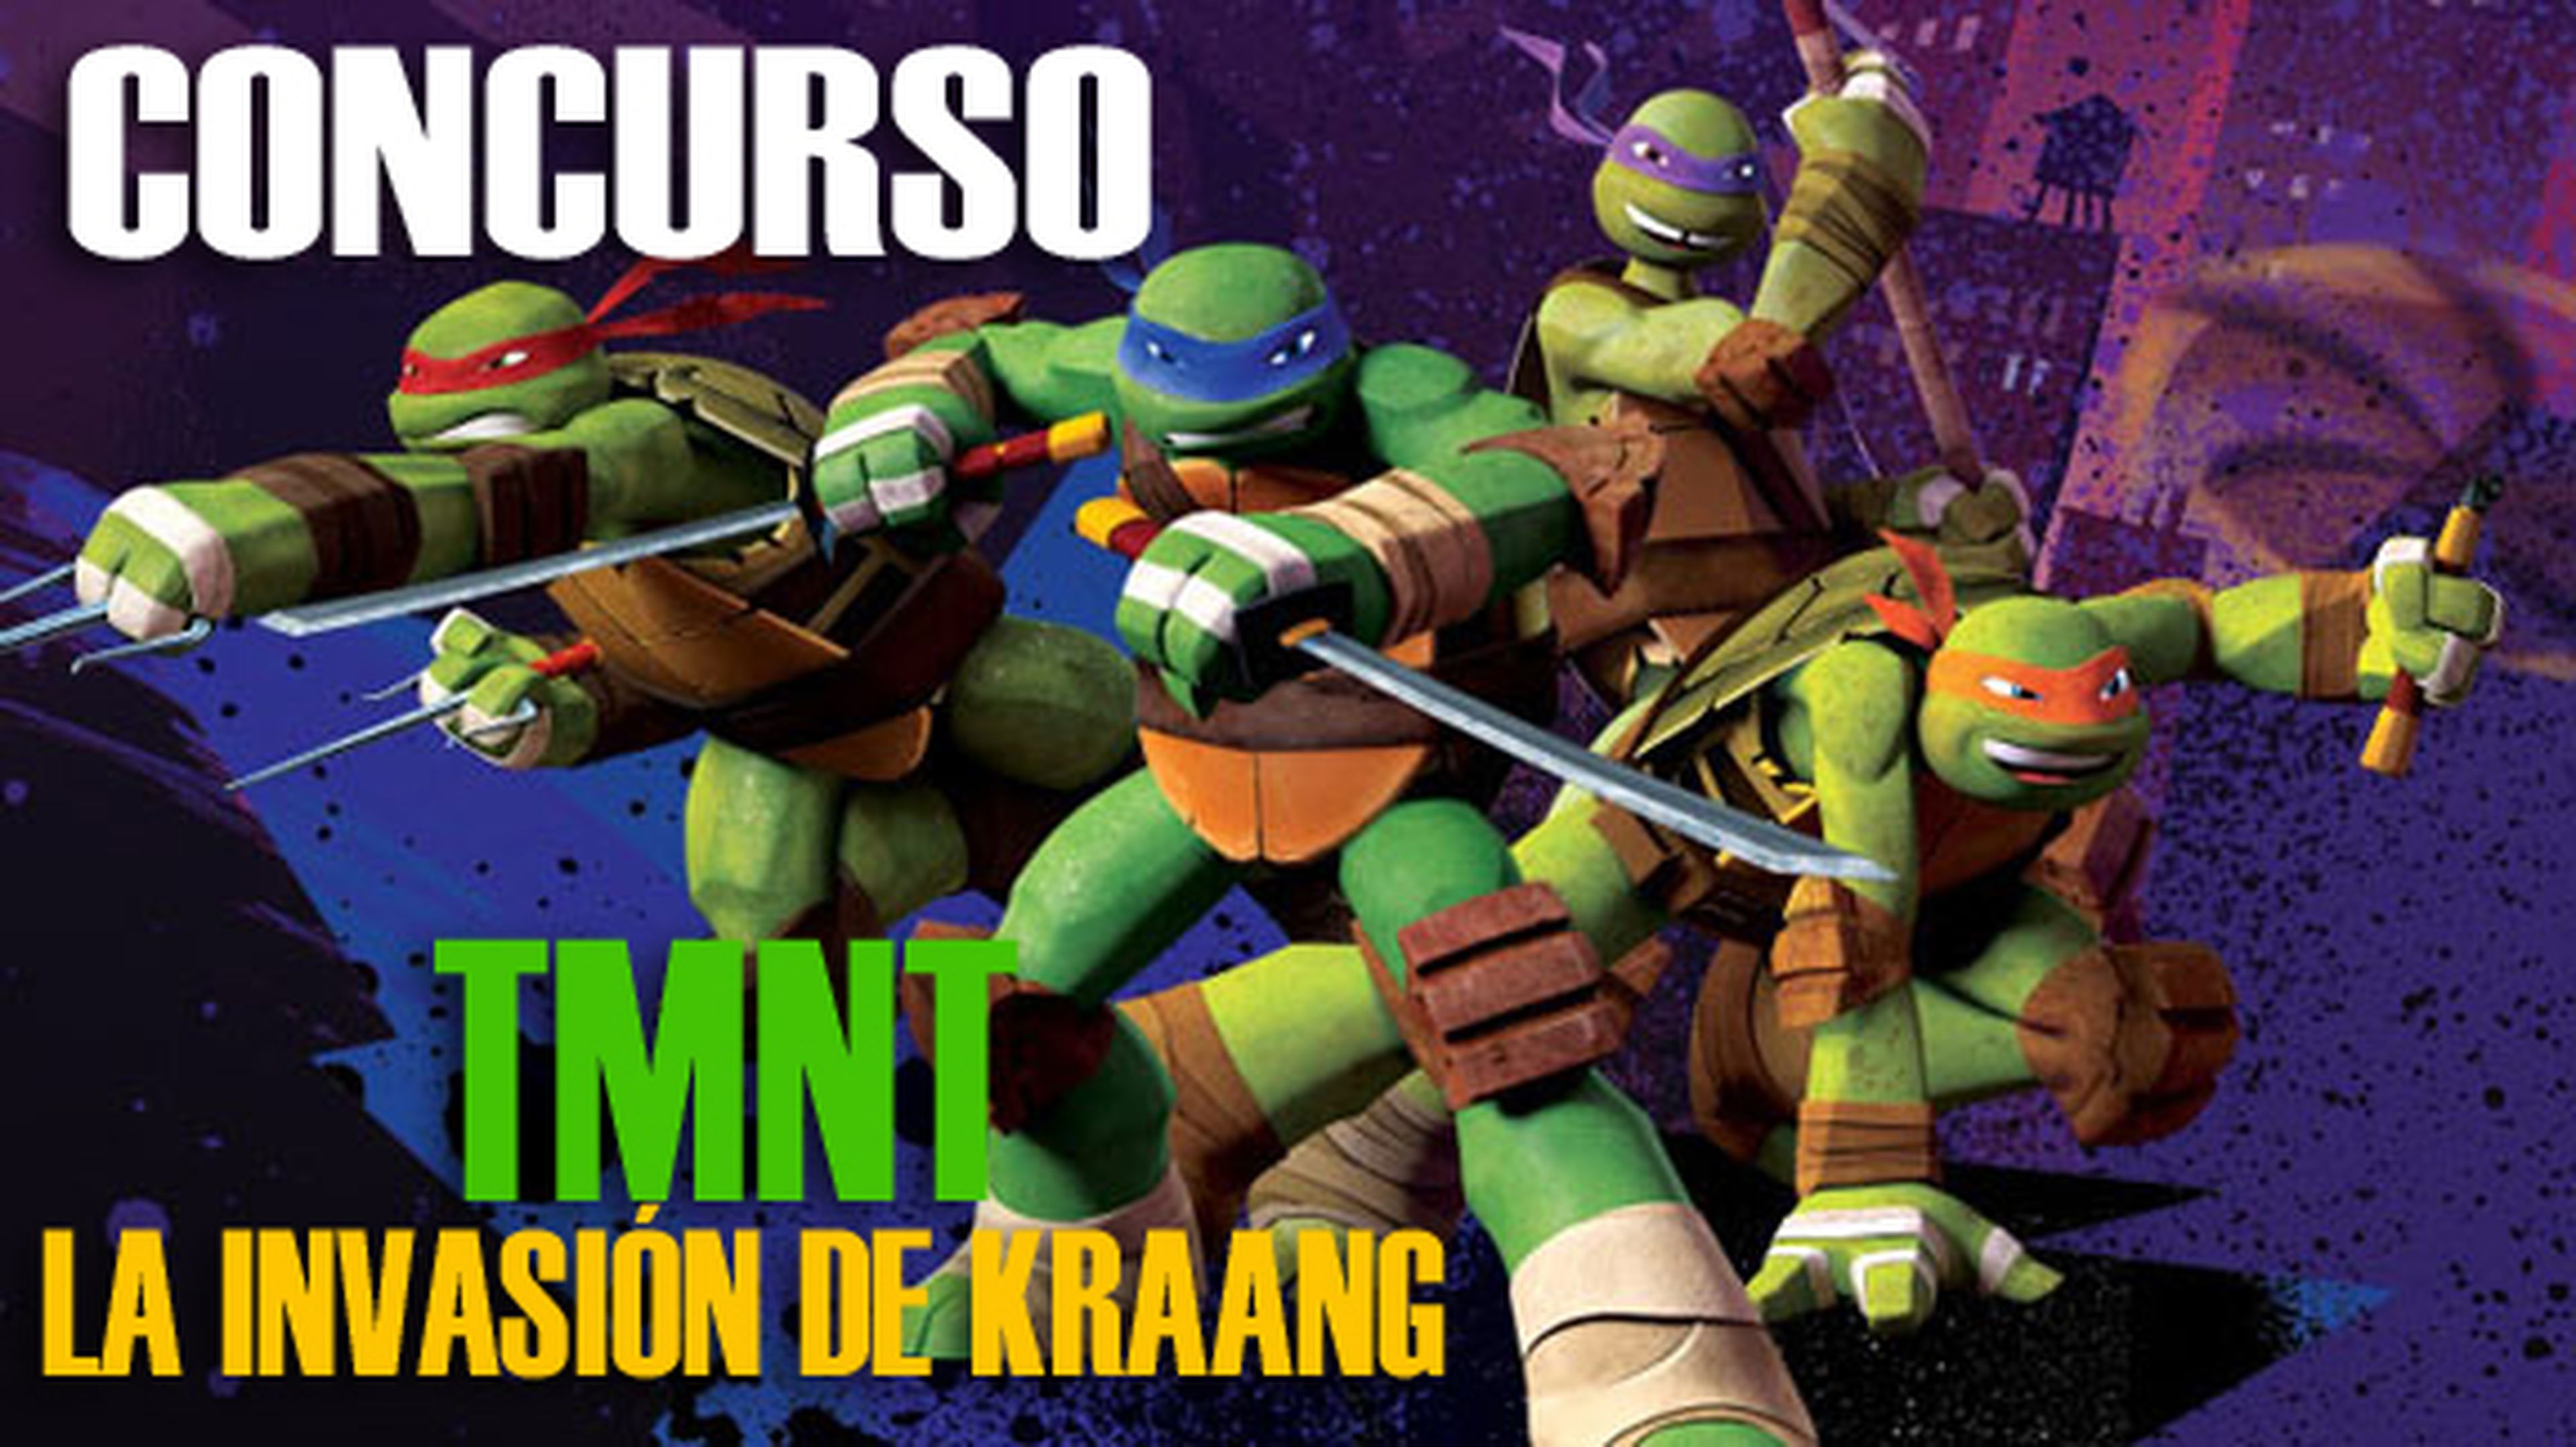 Concurso DVD TMNT: La Invasión de Kraang